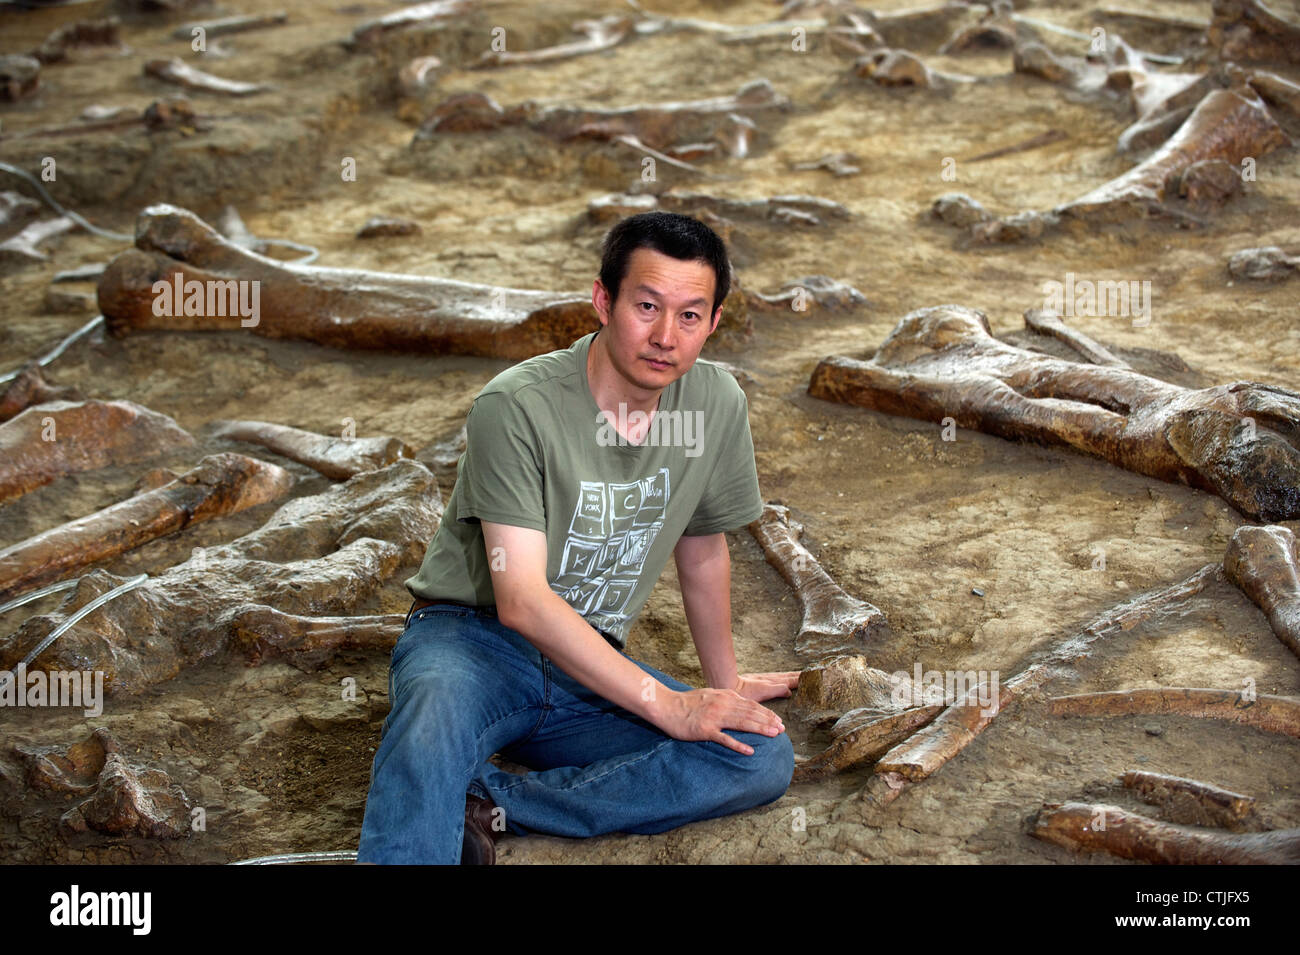 Paleontologo cinese il dott. Xu Xing pone tra i resti di anatra fatturati dinosauri in Zhucheng, Shandong, Cina. 06-giu-2012 Foto Stock